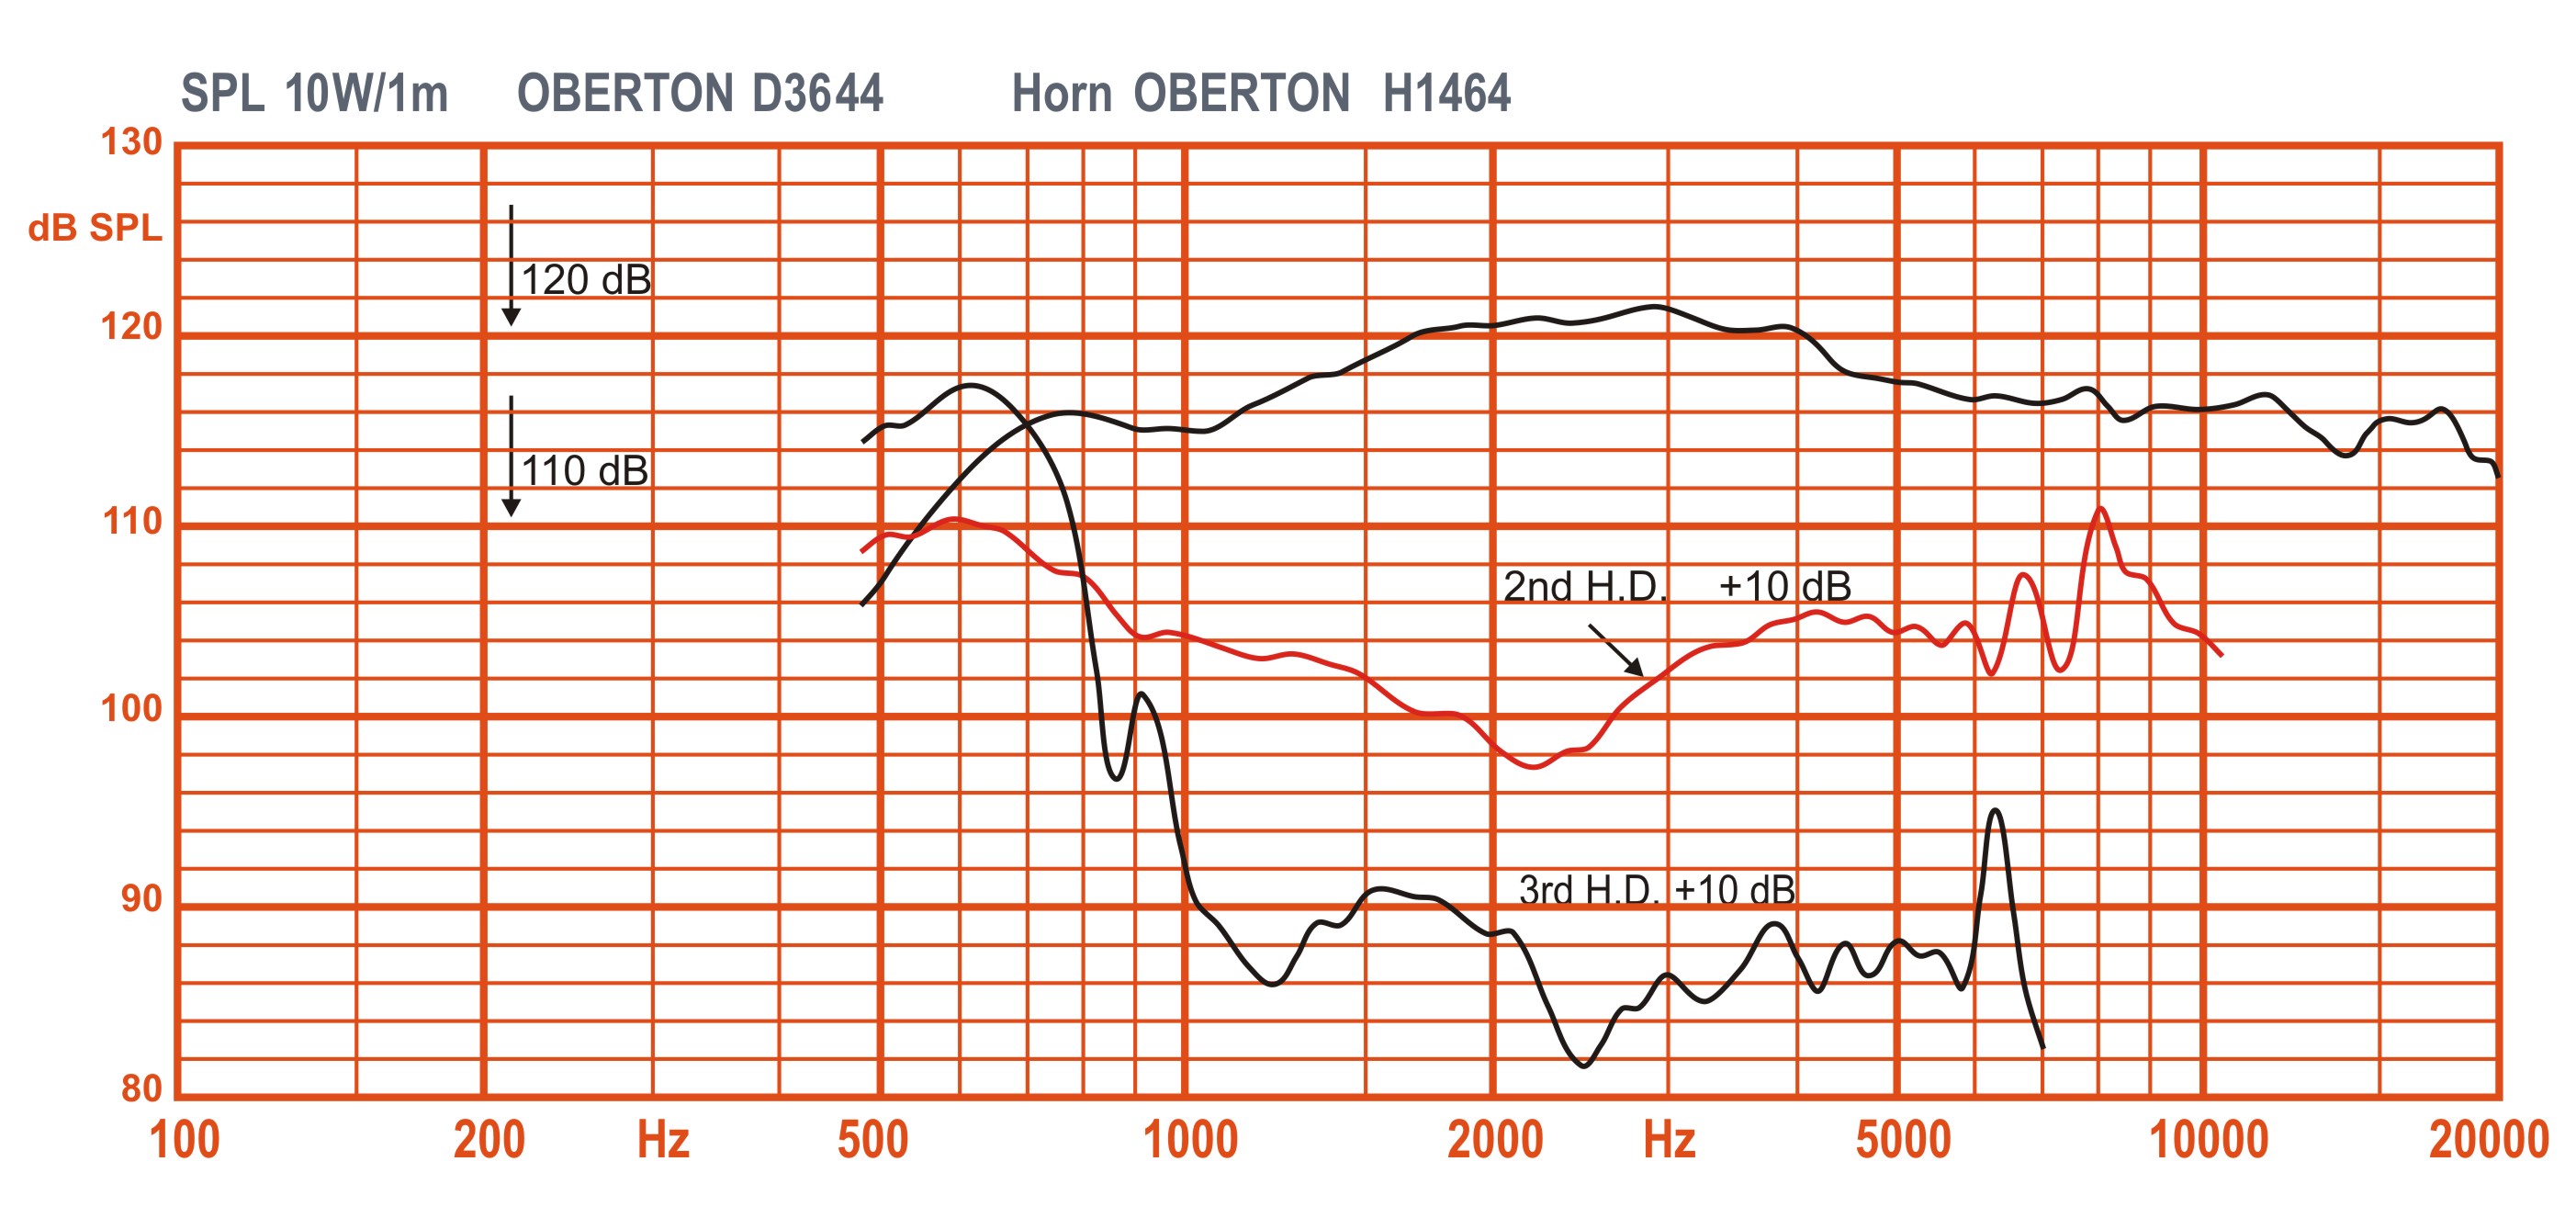 Oberton D3644